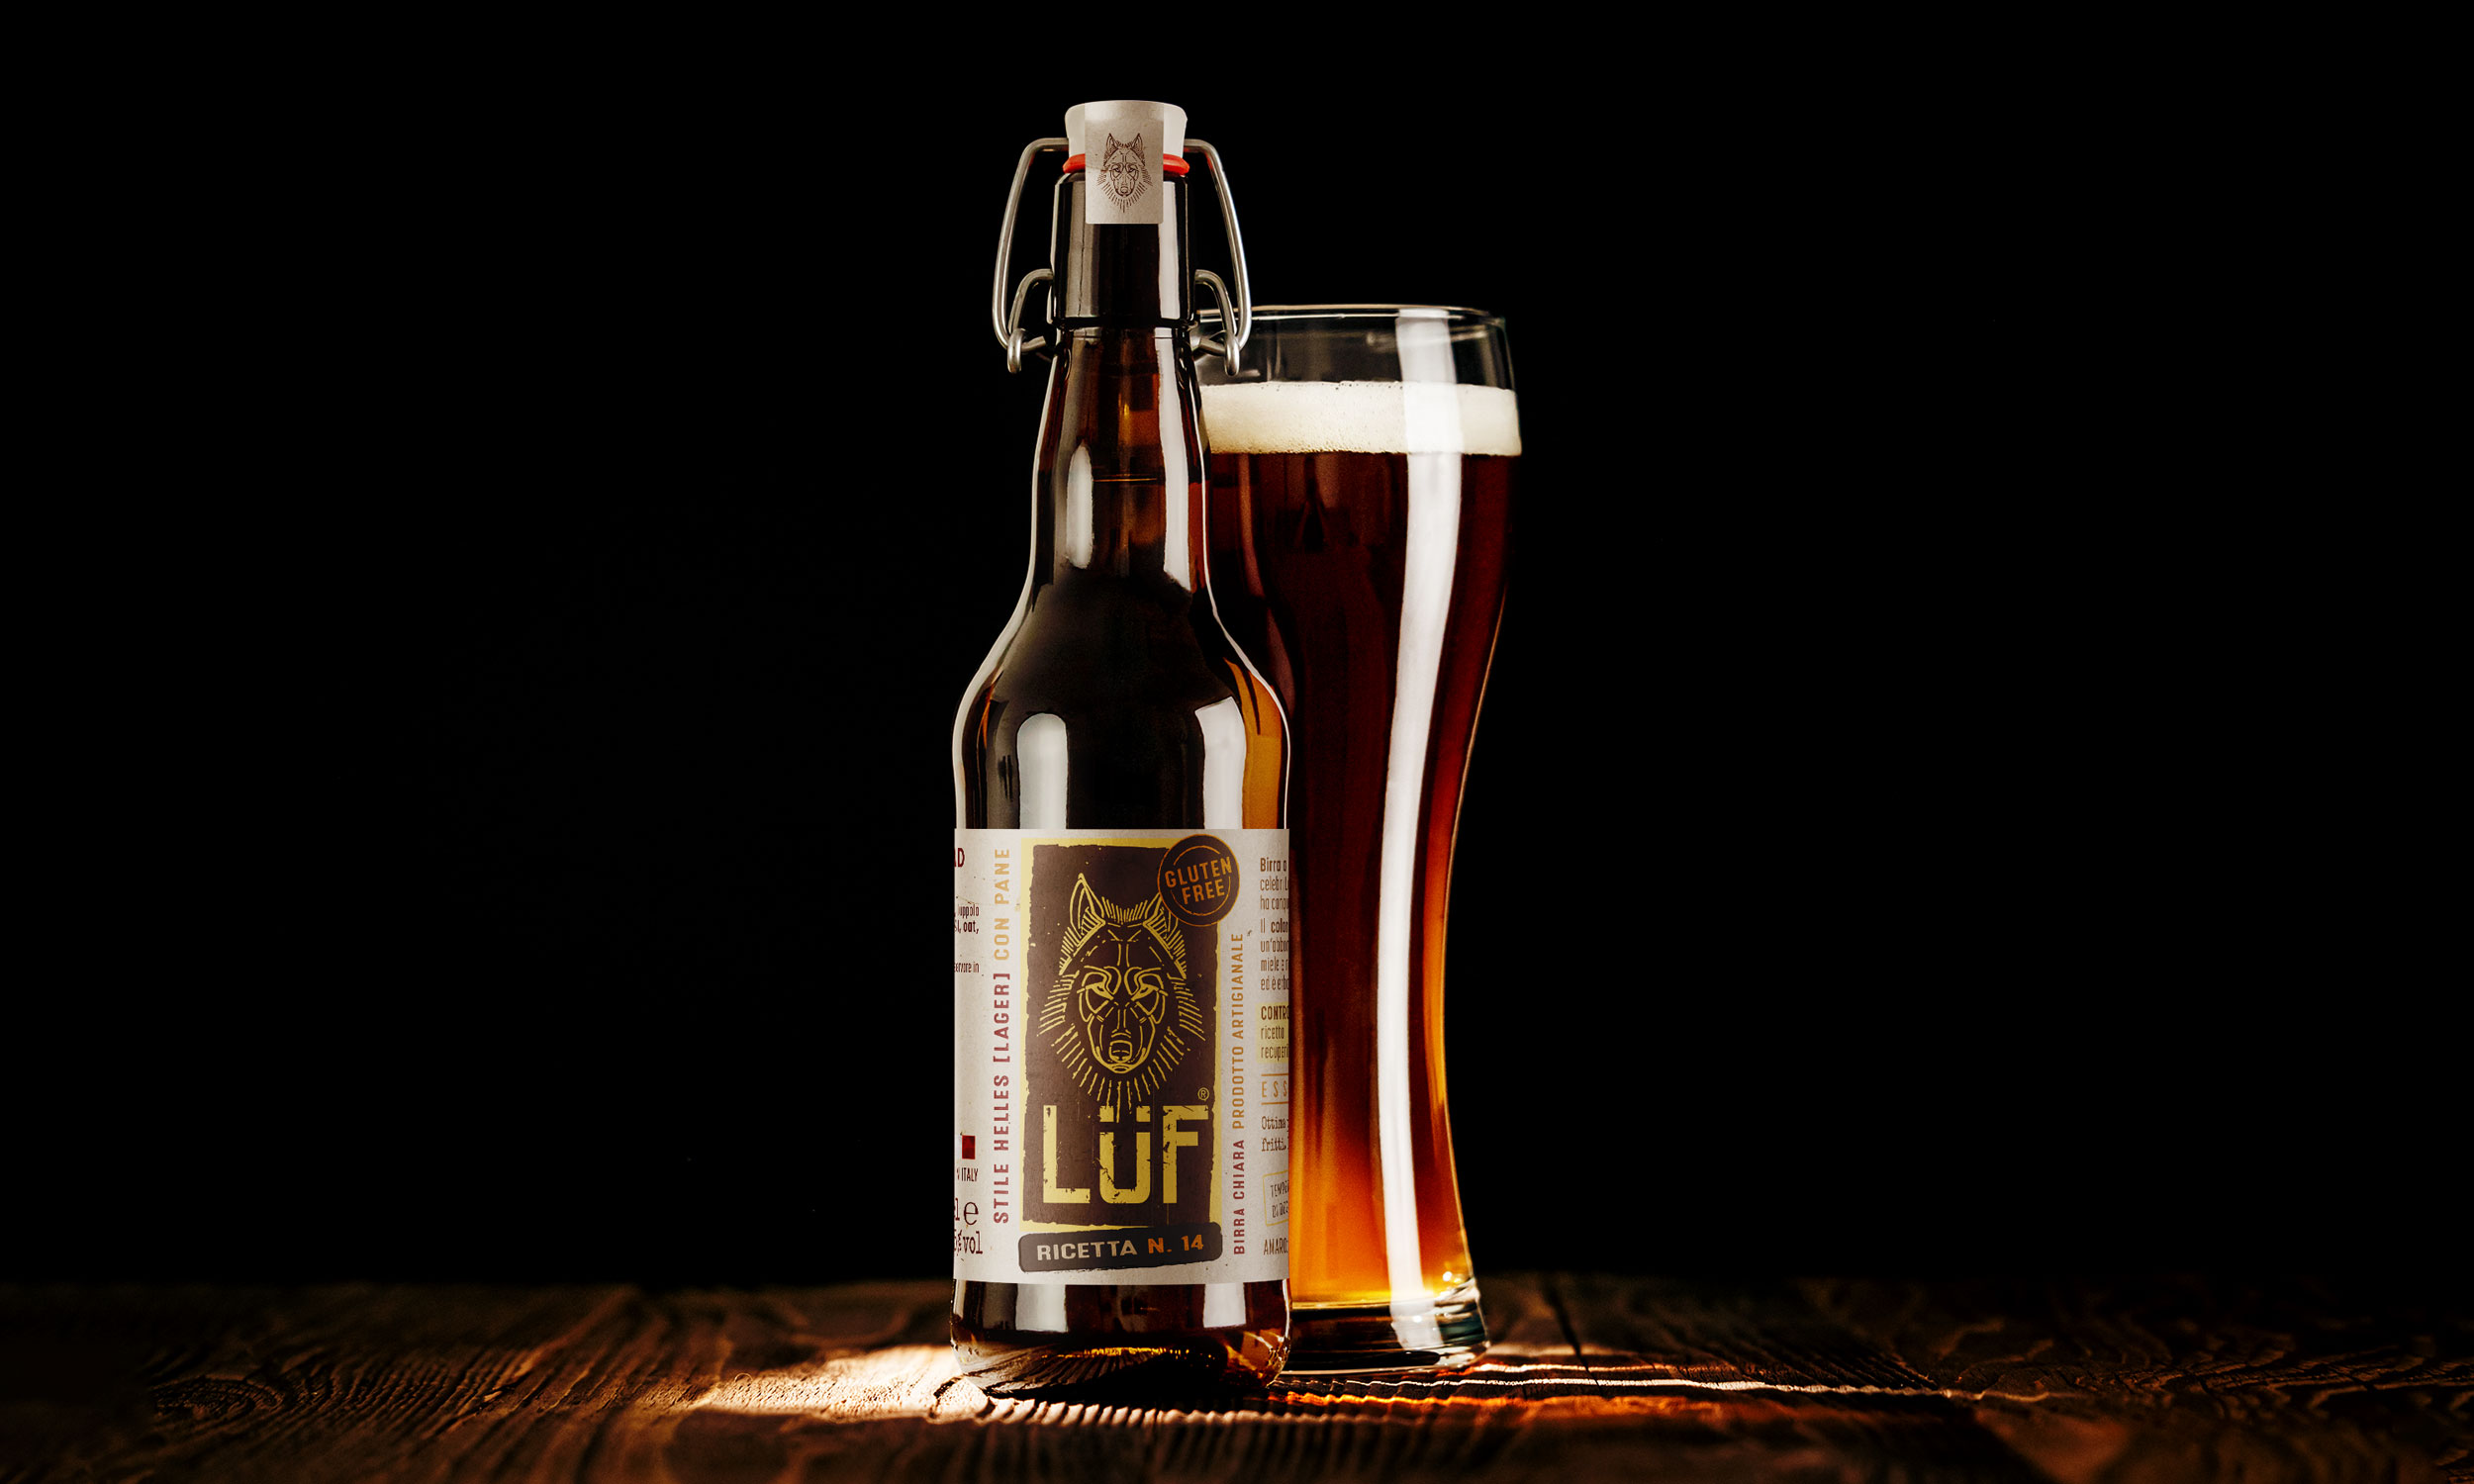 birrificio-luf-beer-design2